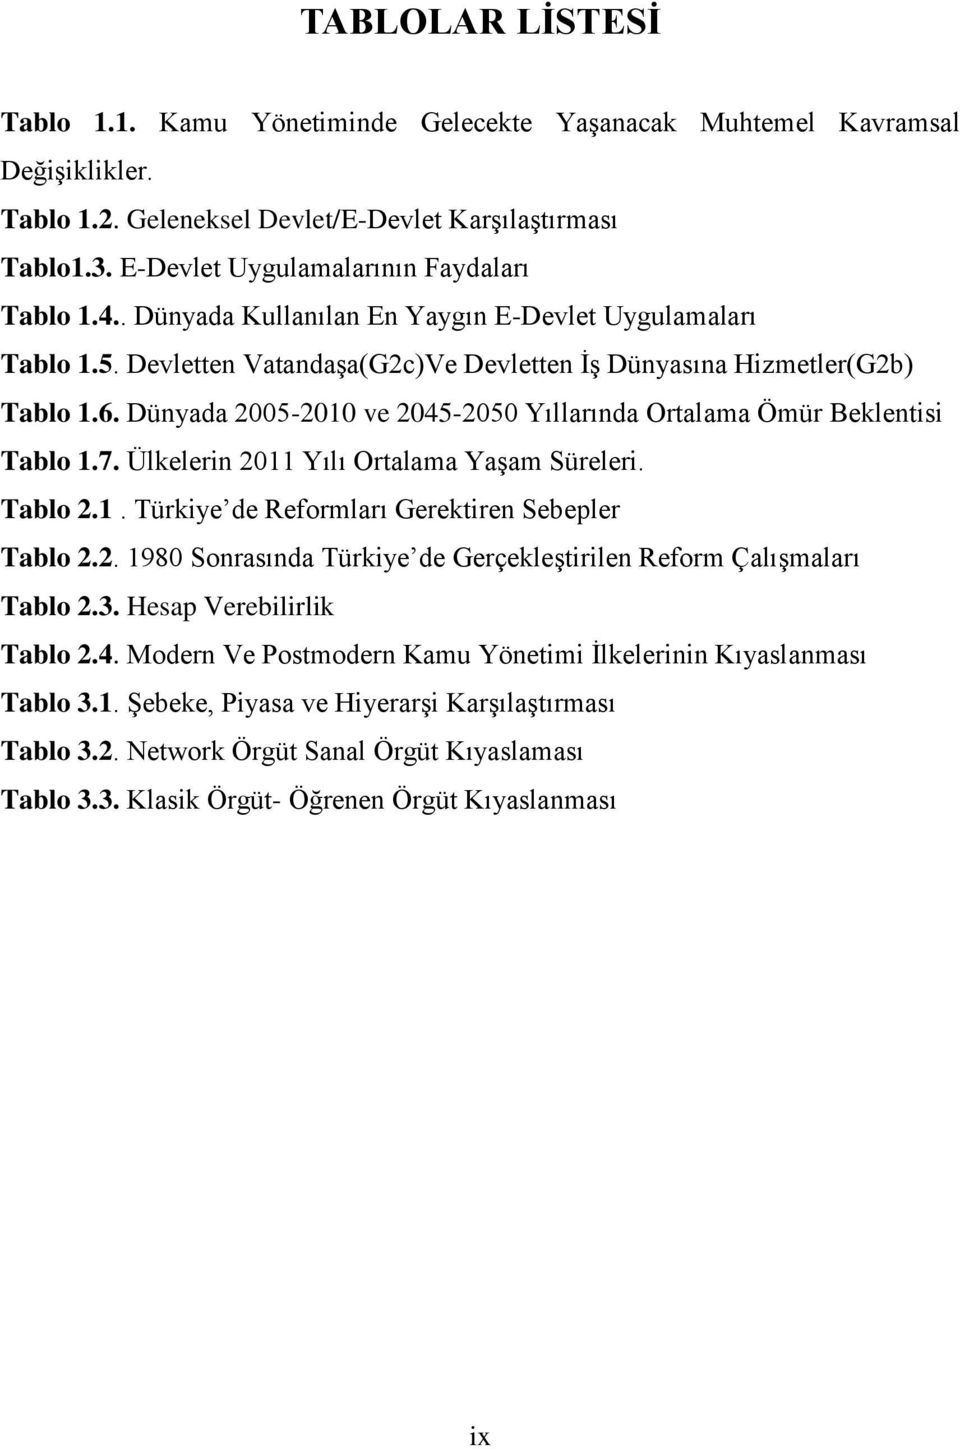 Dünyada 2005-2010 ve 2045-2050 Yıllarında Ortalama Ömür Beklentisi Tablo 1.7. Ülkelerin 2011 Yılı Ortalama Yaşam Süreleri. Tablo 2.1. Türkiye de Reformları Gerektiren Sebepler Tablo 2.2. 1980 Sonrasında Türkiye de Gerçekleştirilen Reform Çalışmaları Tablo 2.